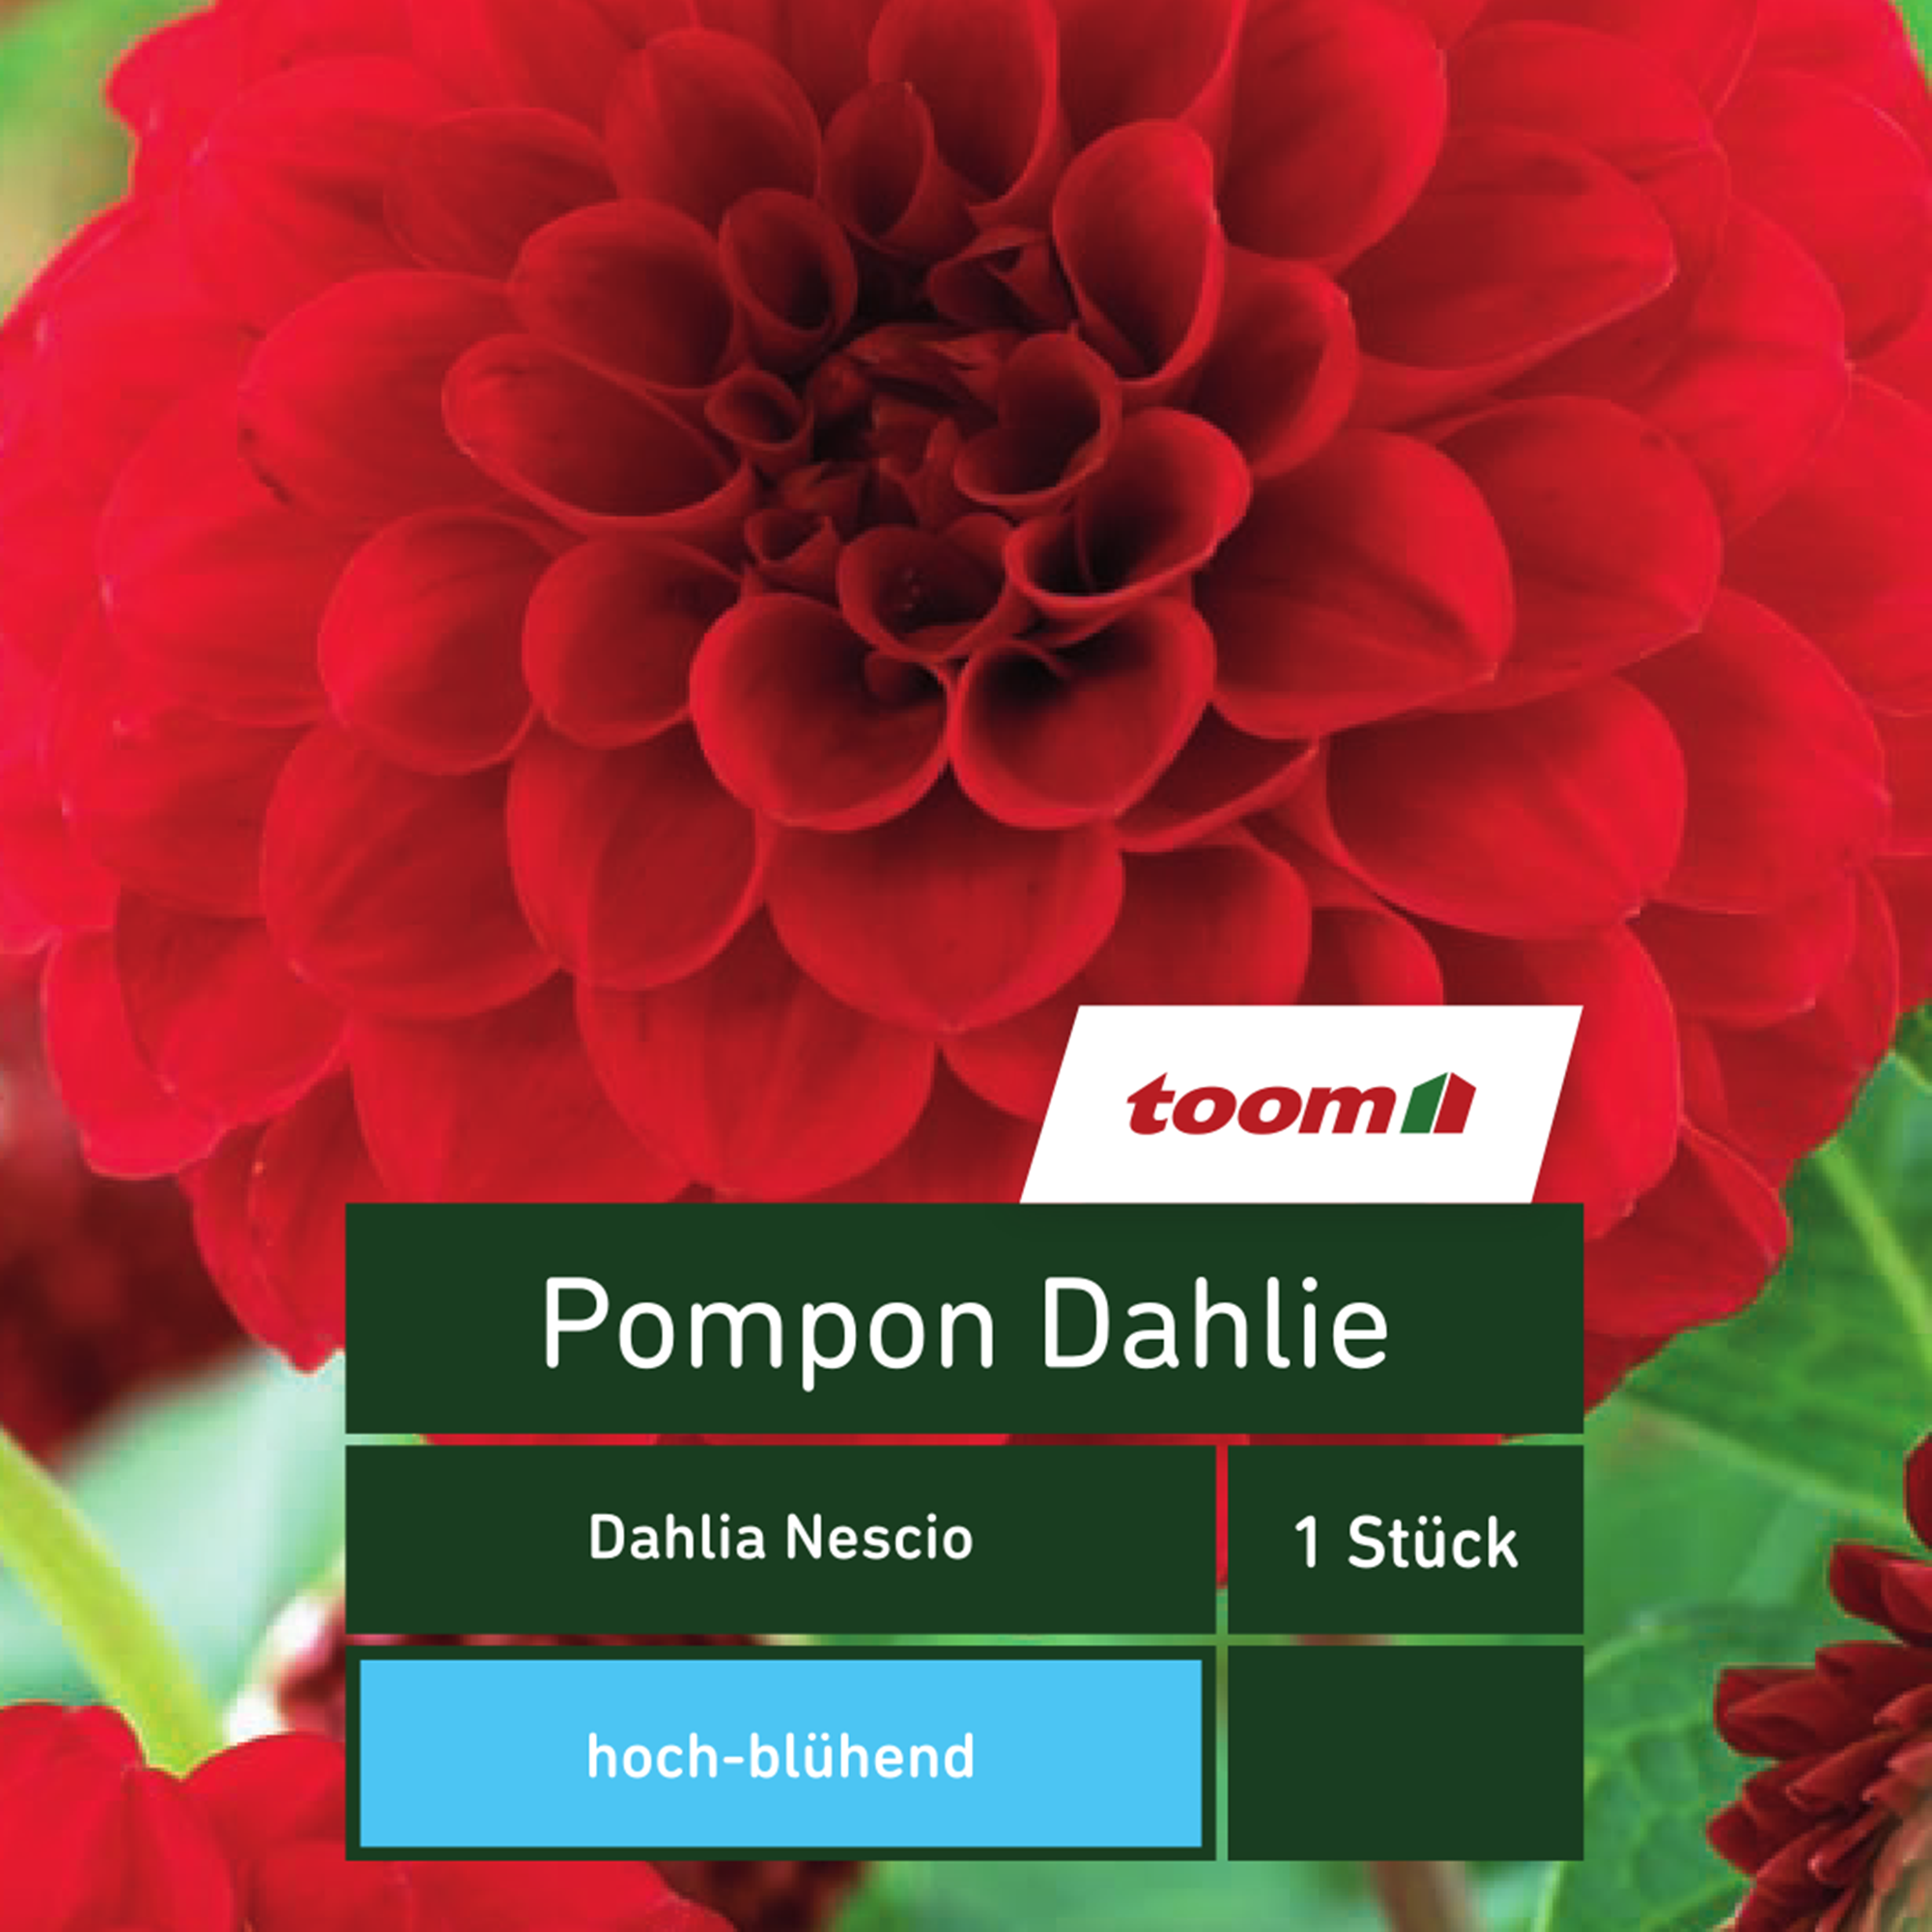 Pompon-Dahlie 'Dahlia Nescio', 1 Stück, rot + product picture